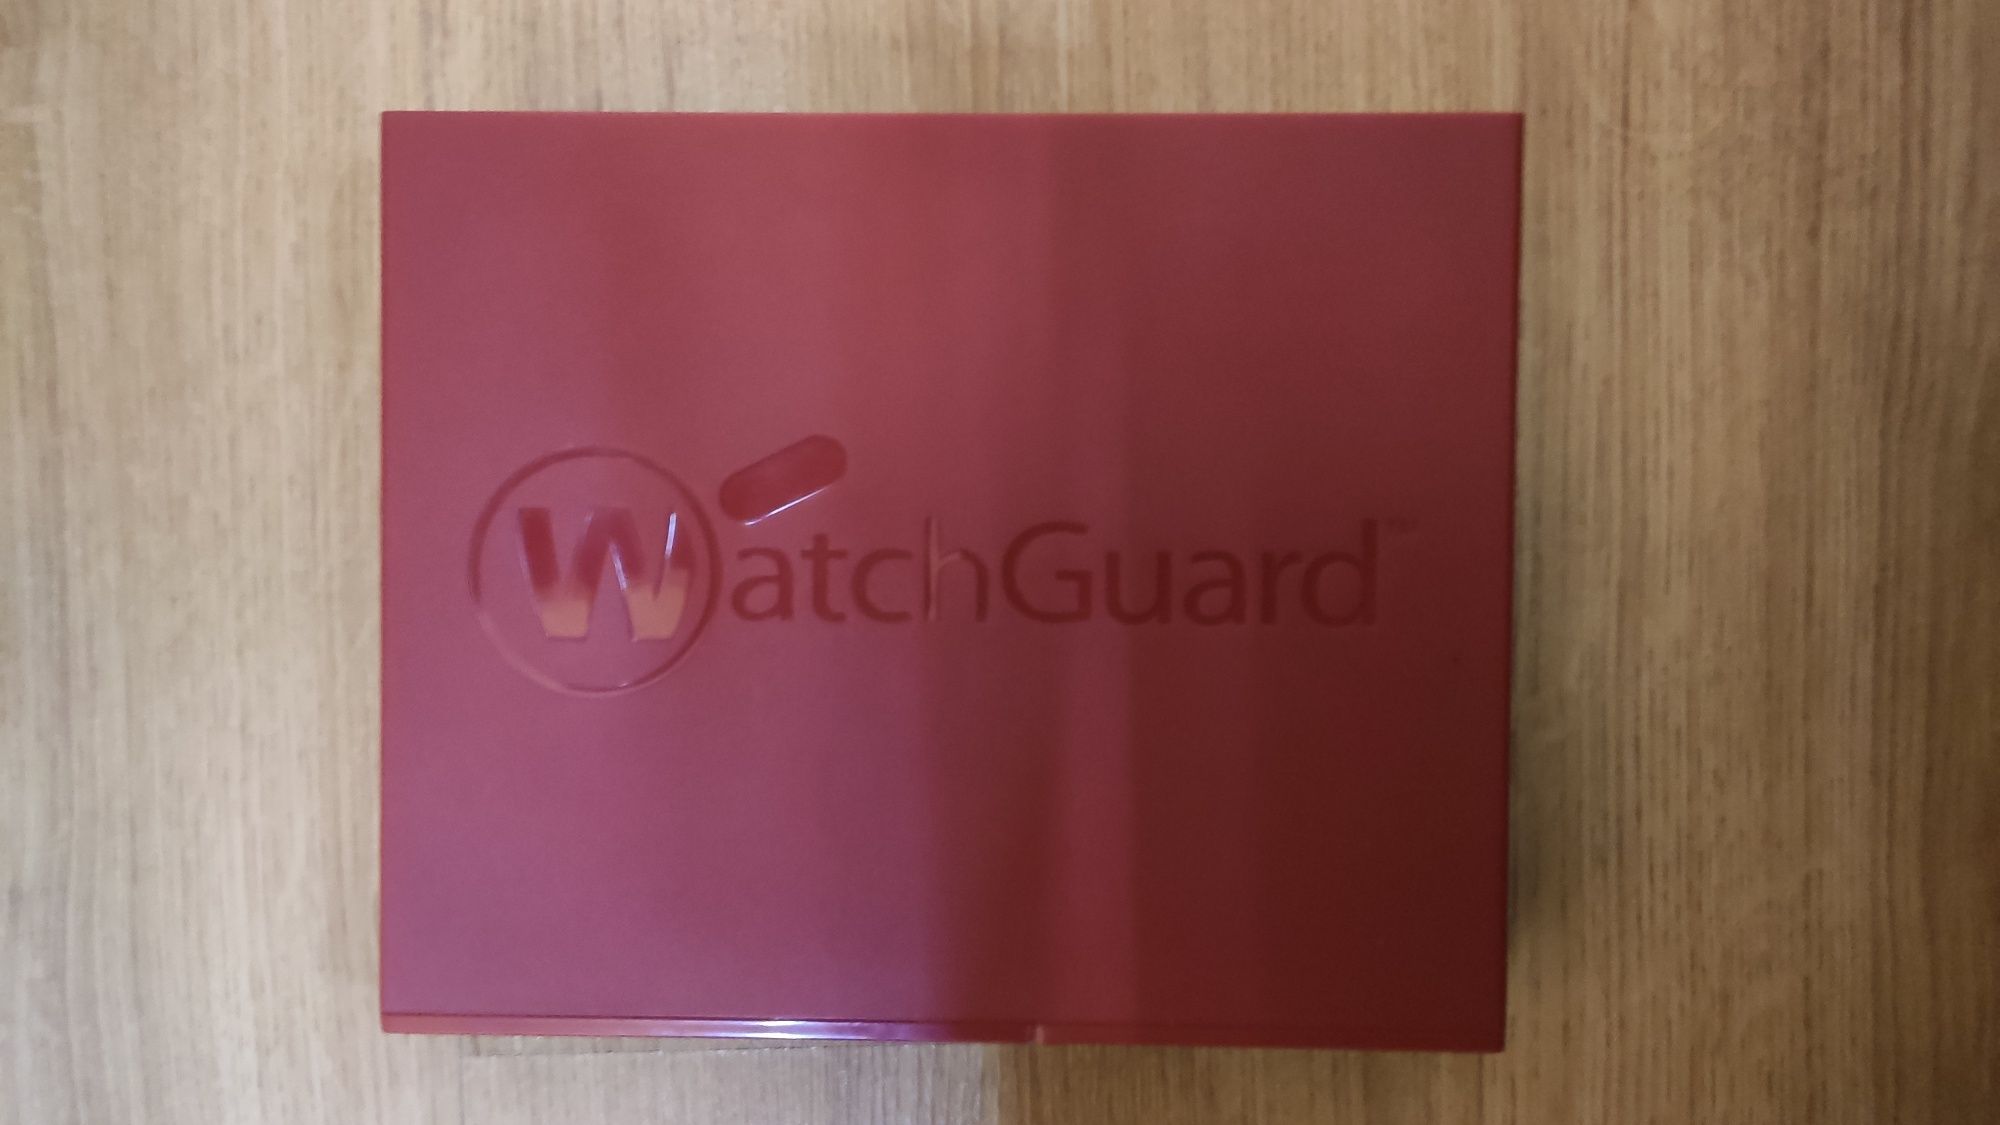 Firewall WatchGuard XTM 2 Series